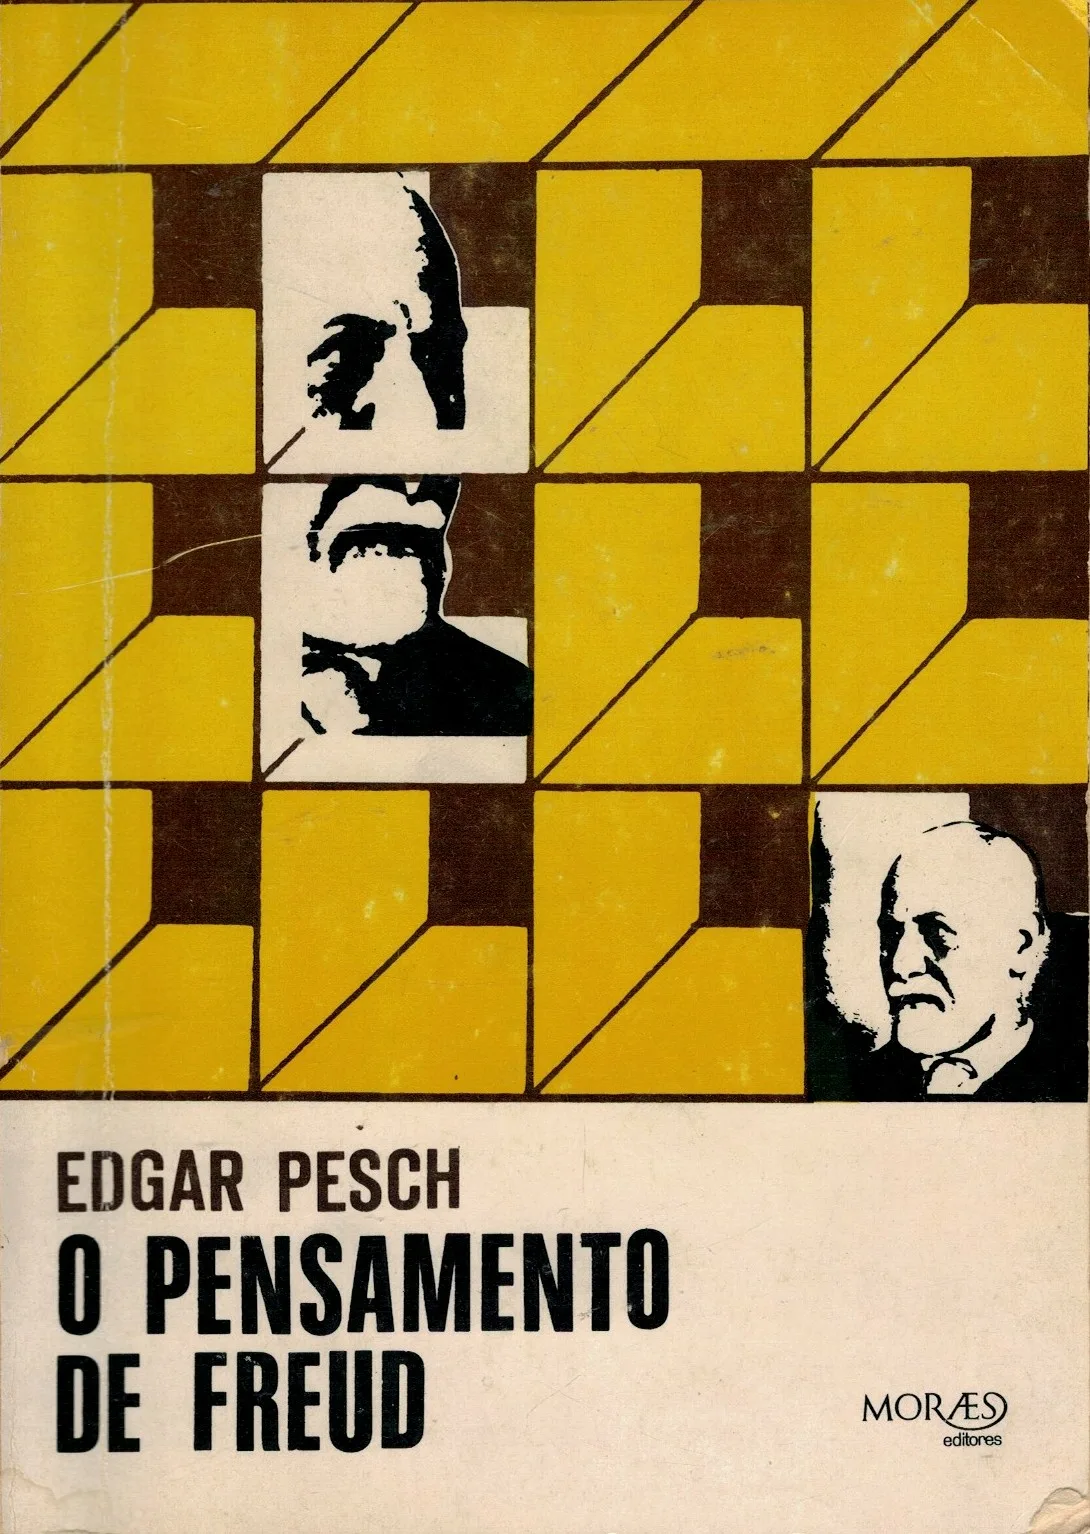 O Pensamento de Freud de Edgar Pesch